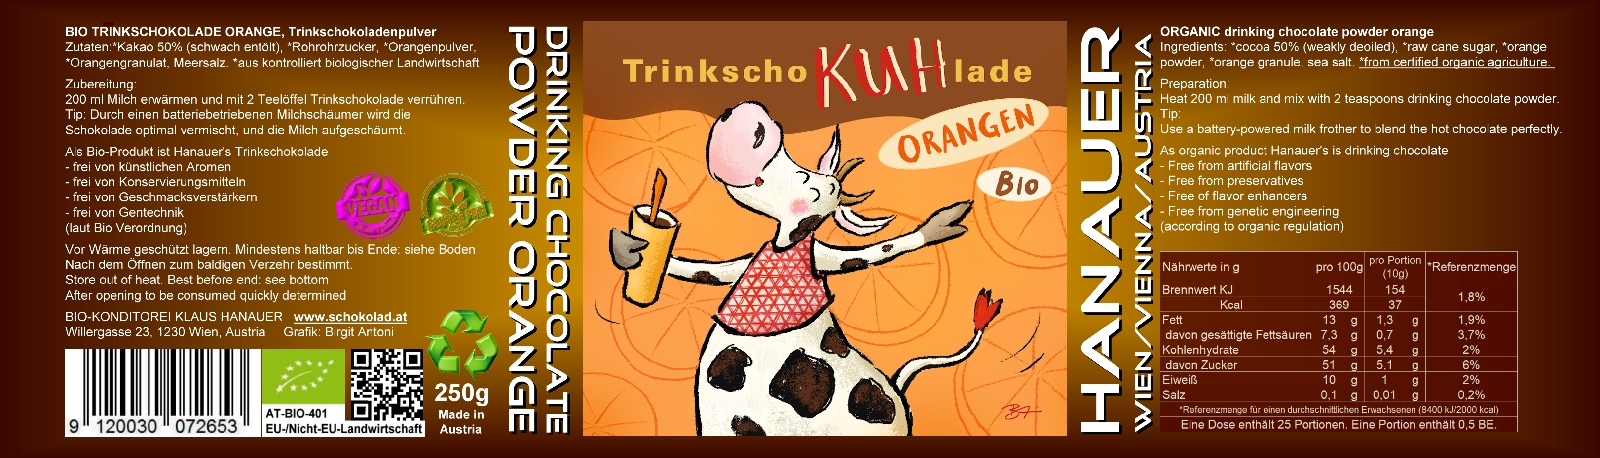 Bio Trink SchoKUHlade Orange Etikett